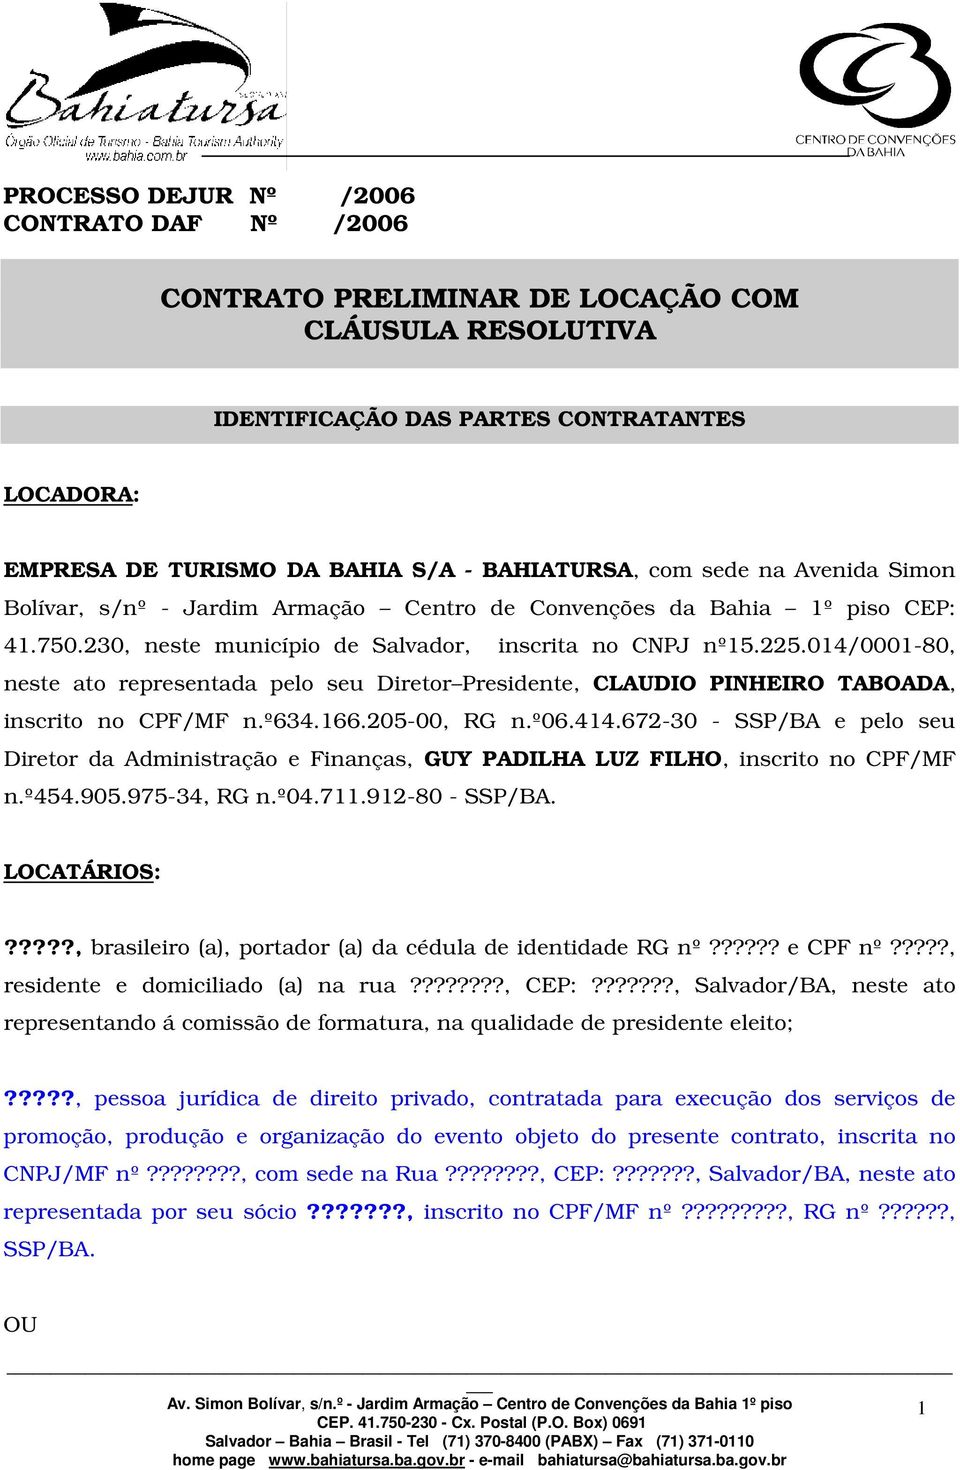 014/0001-80, neste ato representada pelo seu Diretor Presidente, CLAUDIO PINHEIRO TABOADA, inscrito no CPF/MF n.º634.166.205-00, RG n.º06.414.